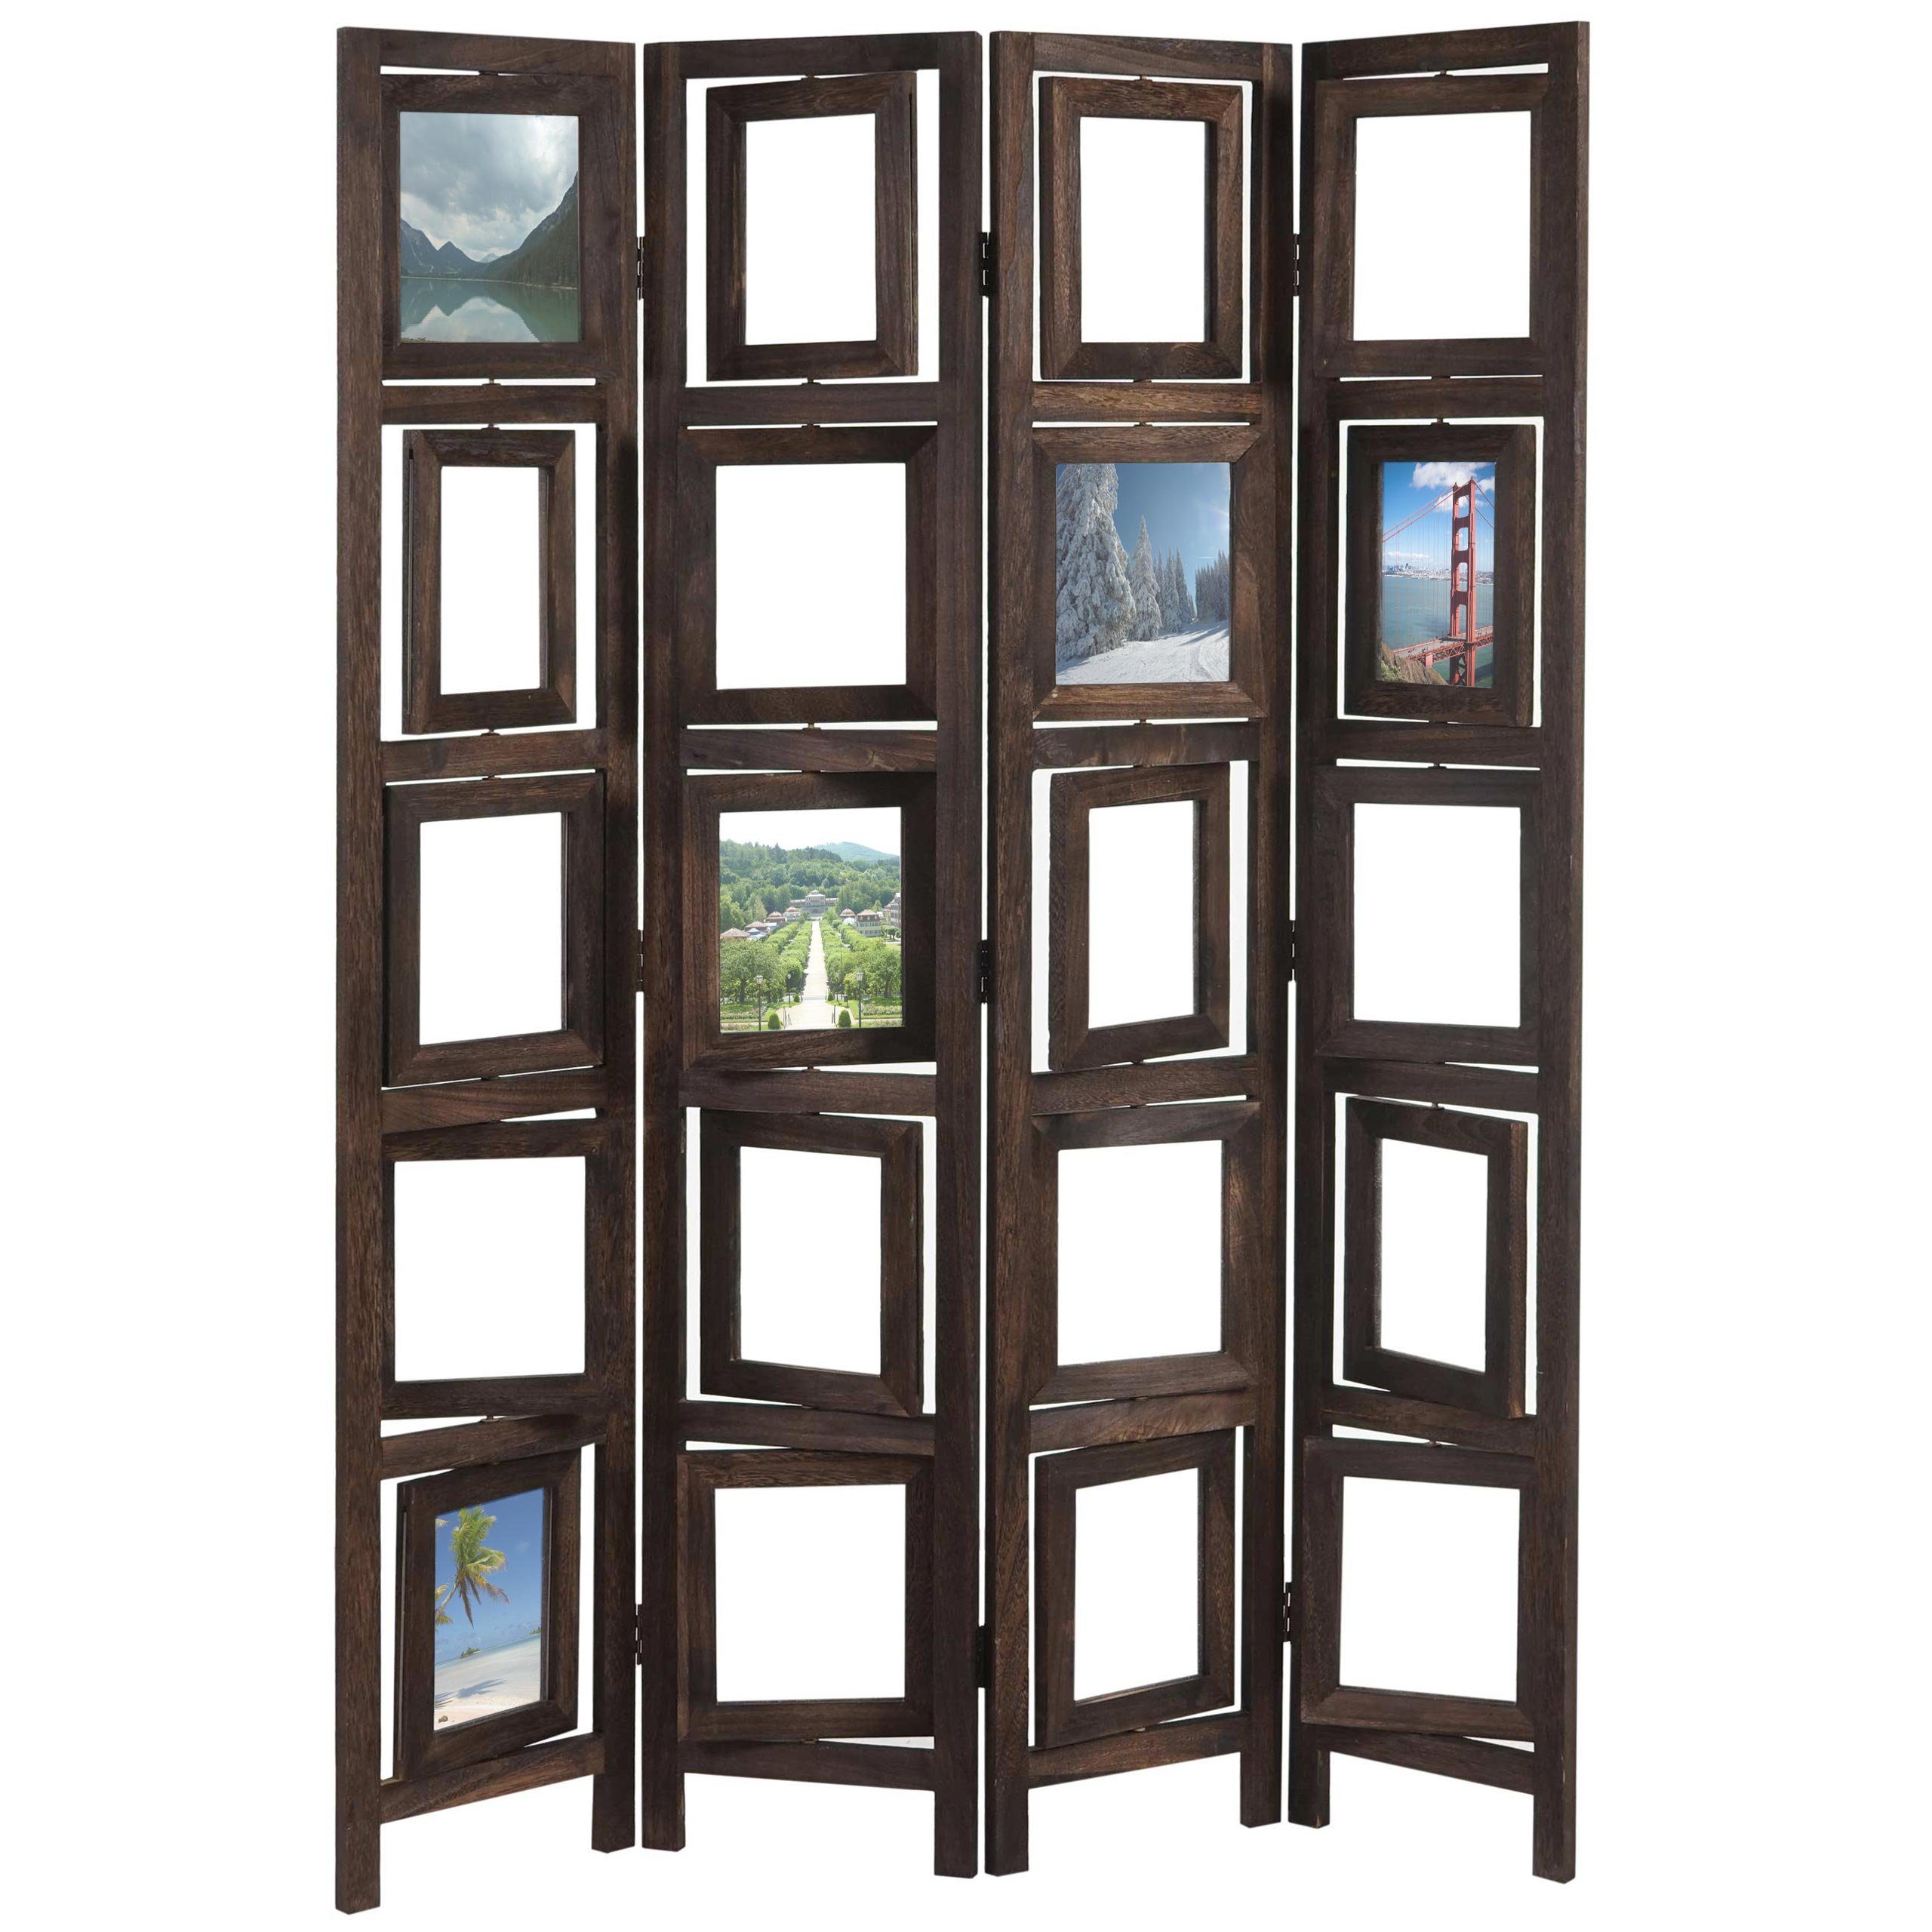 MCW Paravent Bildgalerie II, Fenster mit je zwei Plexiglasplatten, 4 Paneele, drehbare Fotofenster braun